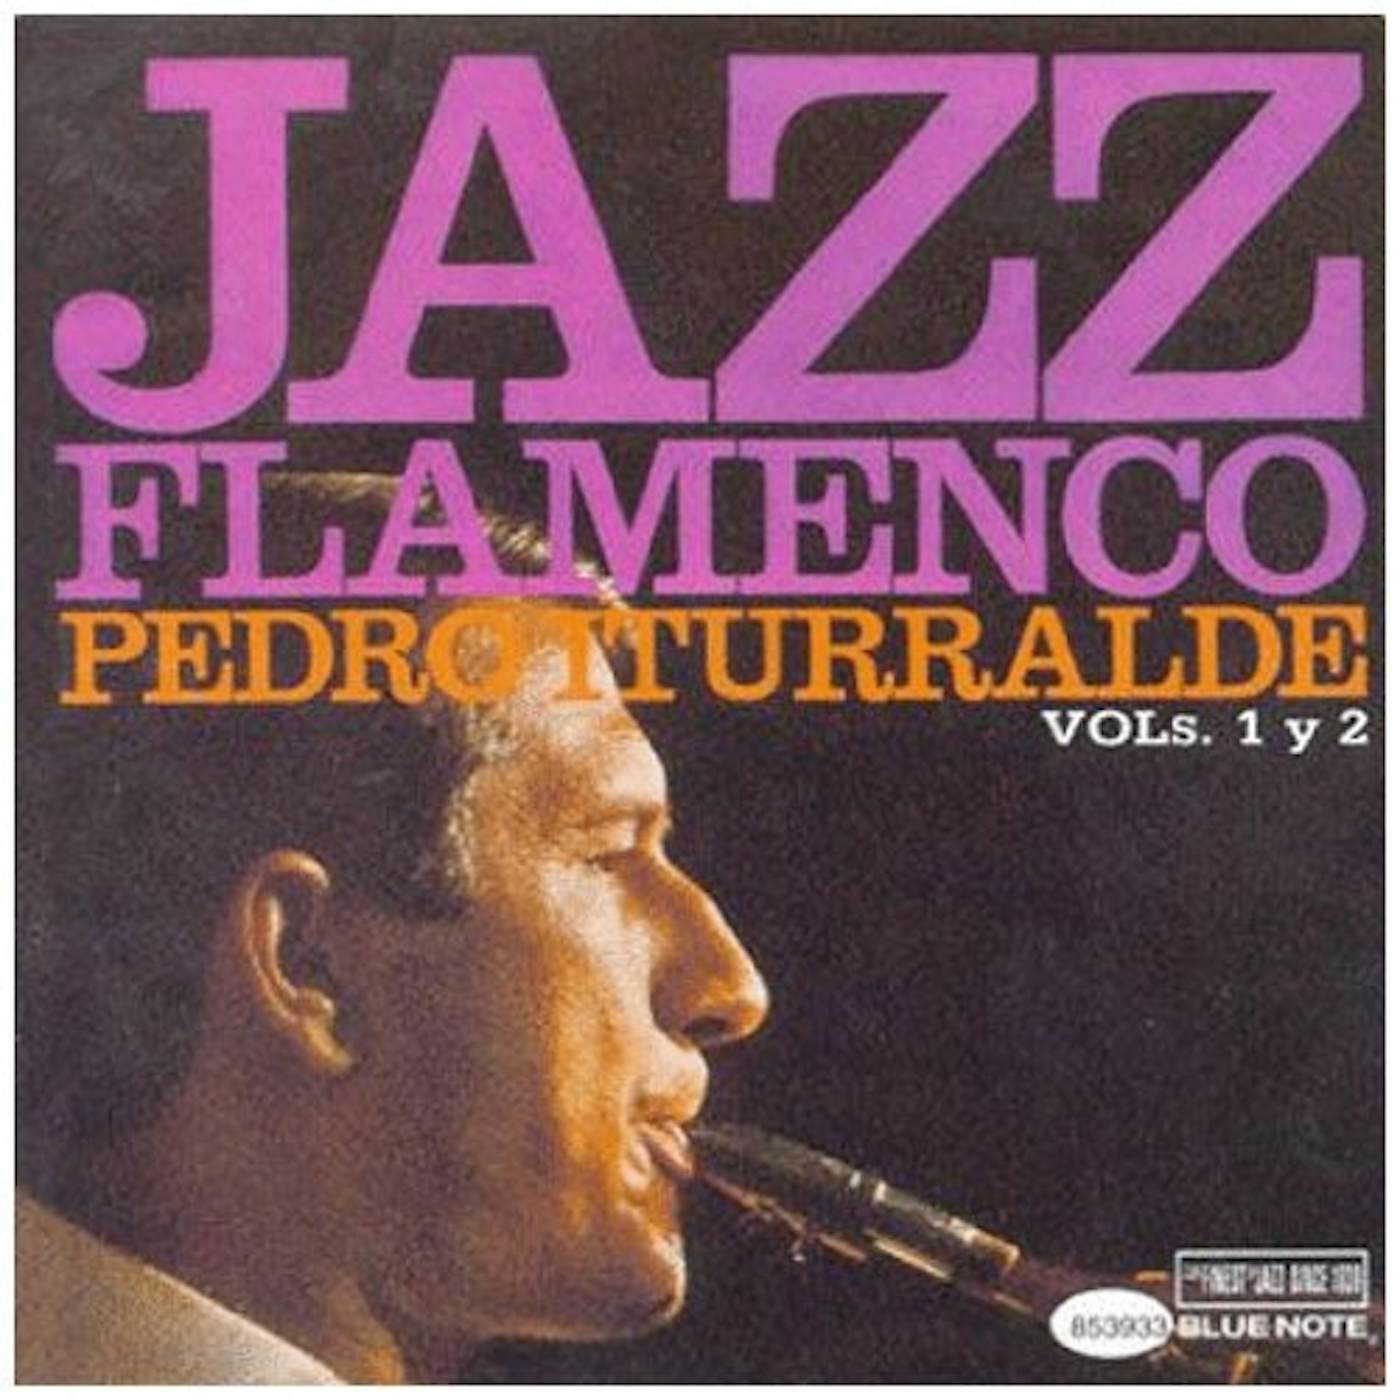 Pedro Iturralde JAZZ FLAMENCO VOLS.1+2 CD